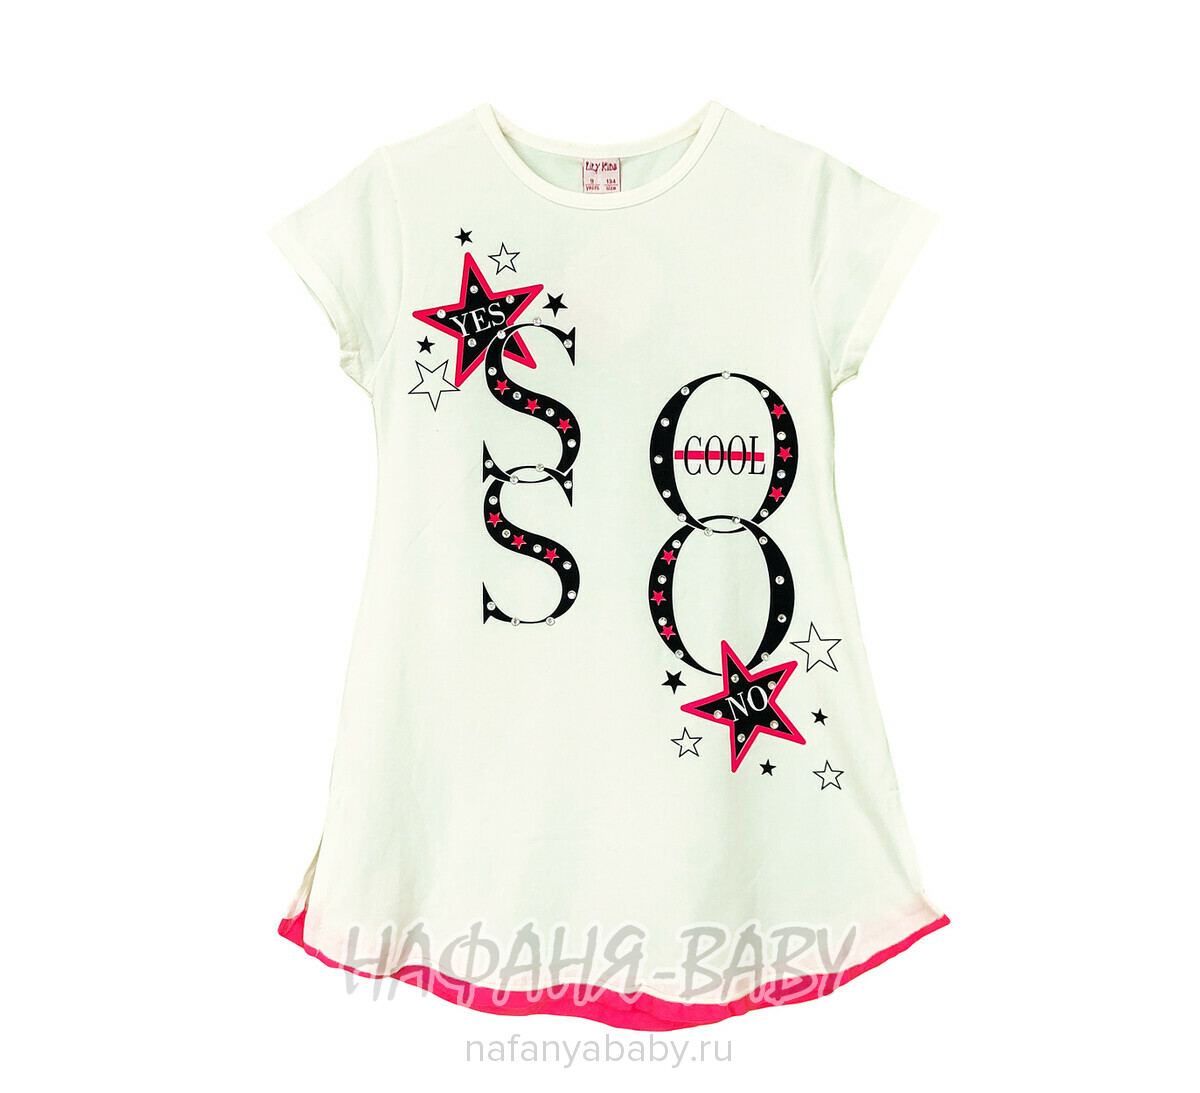 Подростковое платье-туника LILY Kids, купить в интернет магазине Нафаня. арт: 5021.